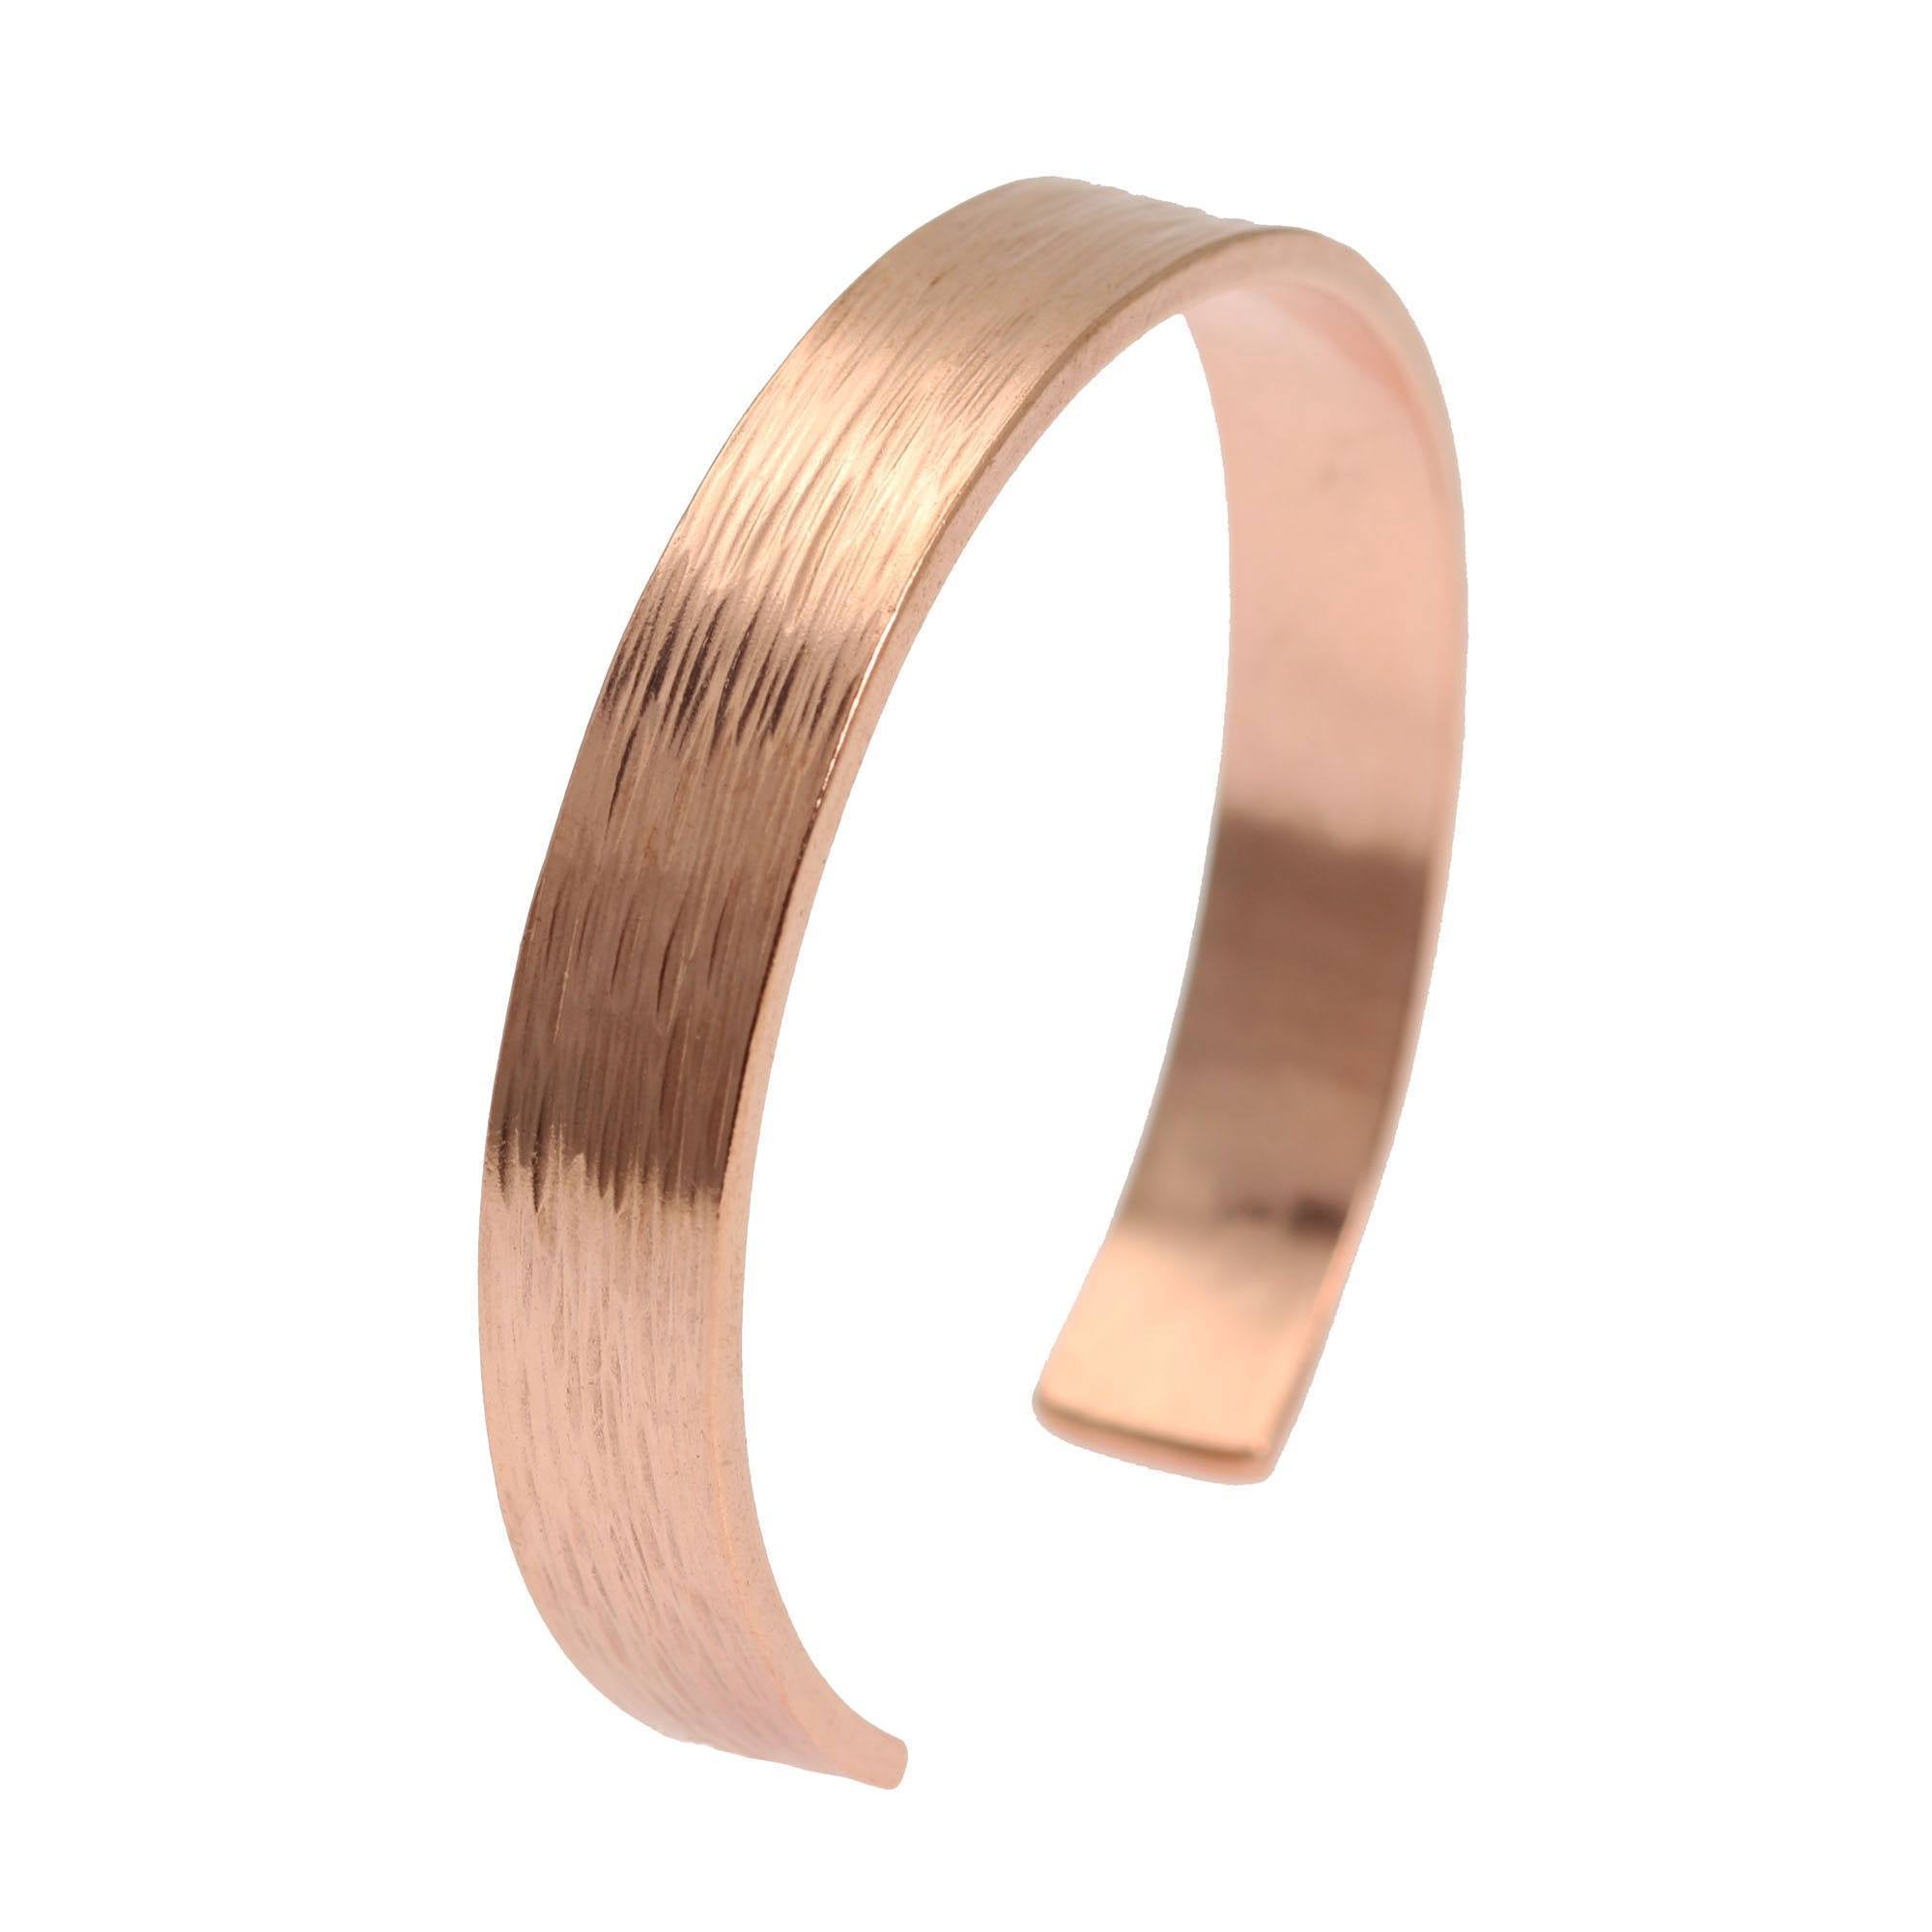 10mm Wide Bark Copper Cuff Bracelet - Solid Copper Cuff